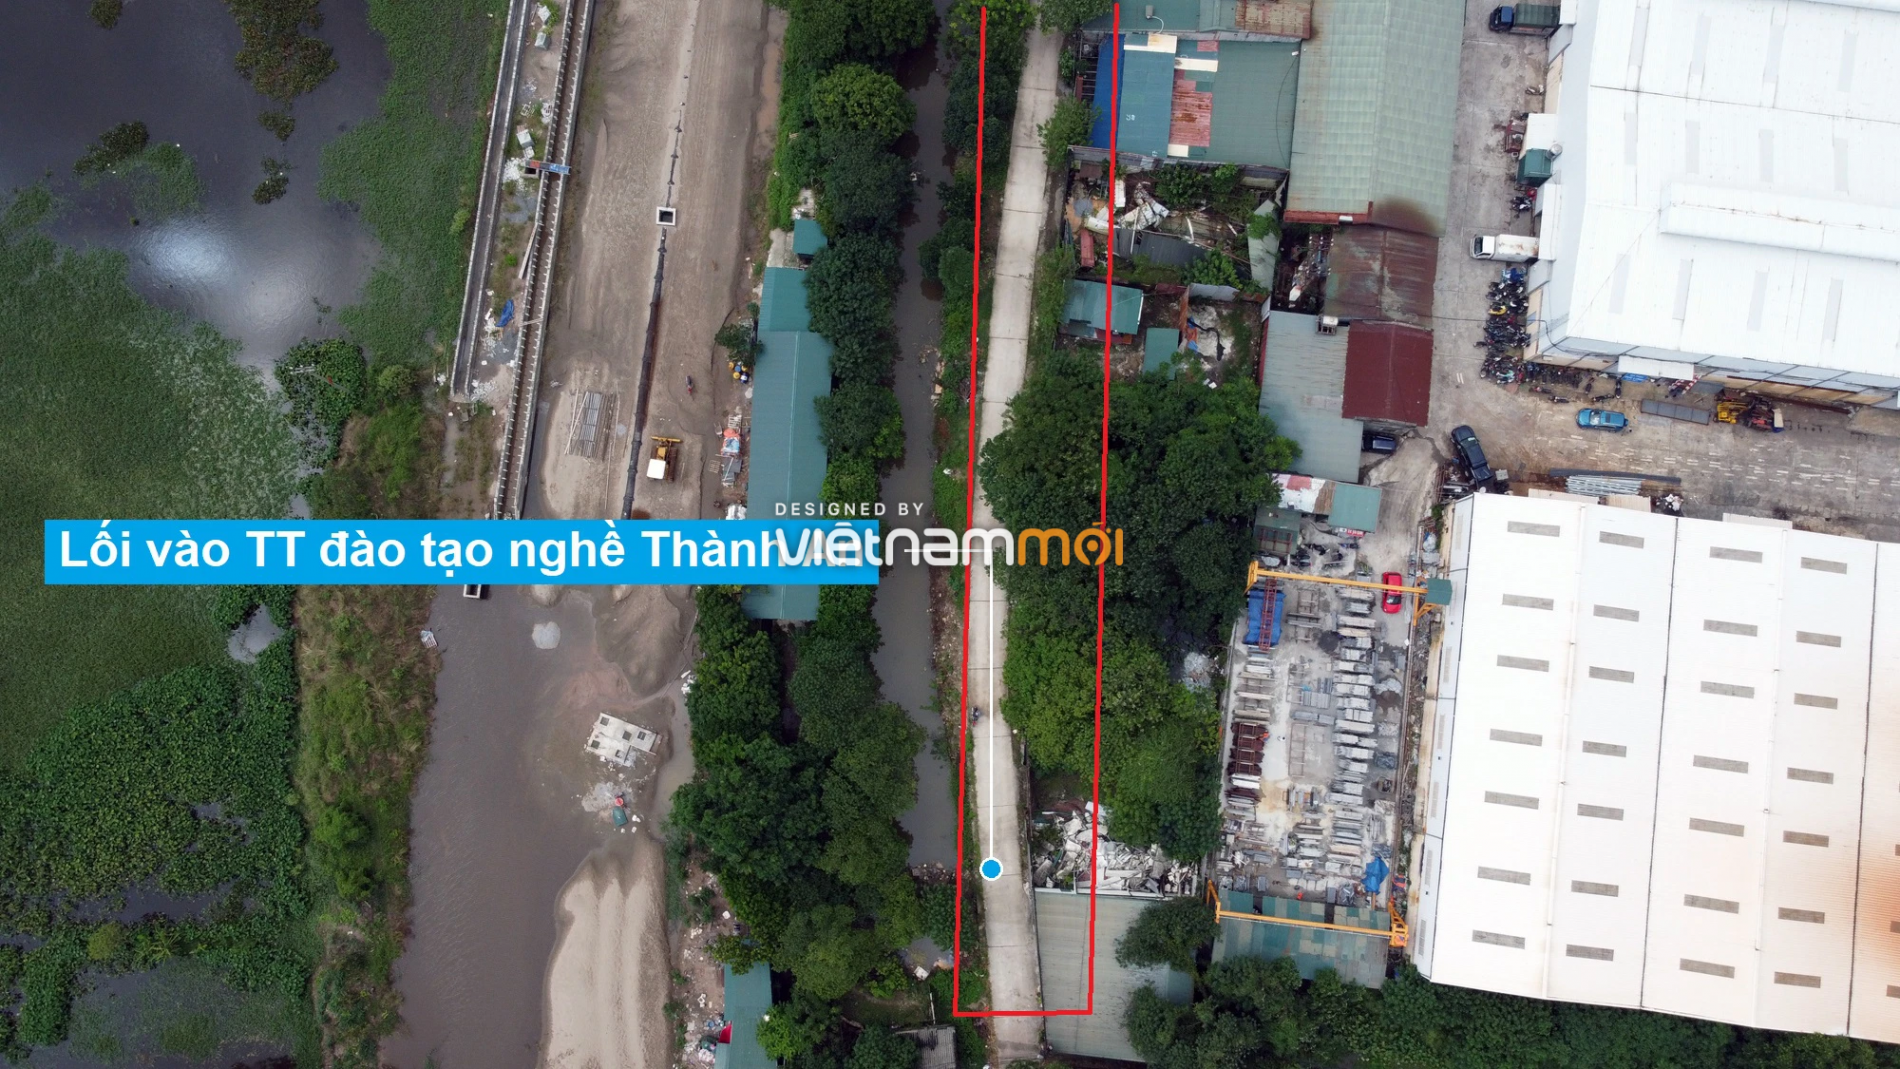 Những khu đất sắp thu hồi để mở đường ở xã Tam Hiệp, Thanh Trì, Hà Nội (phần 2) - Ảnh 7.